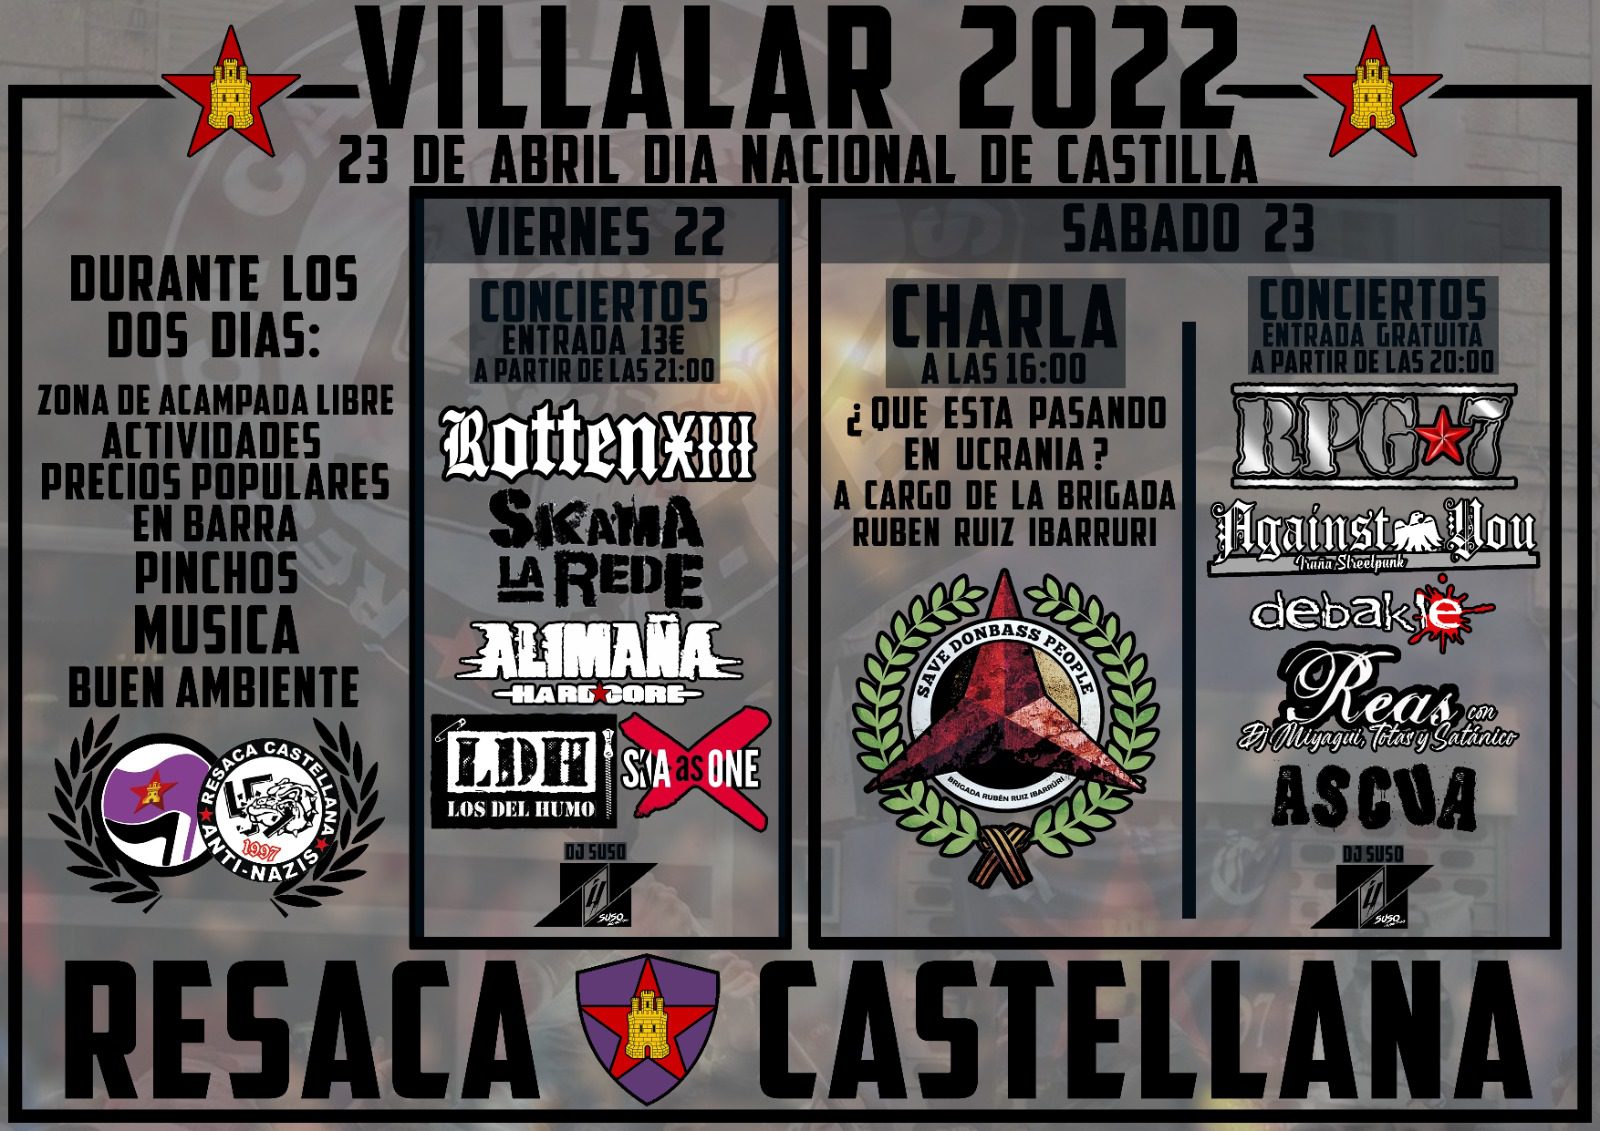 El colectivo Resaca Castellana organiza una serie de actividades y conciertos por el Día Nacional de Castilla en Villalar de los Comuneros